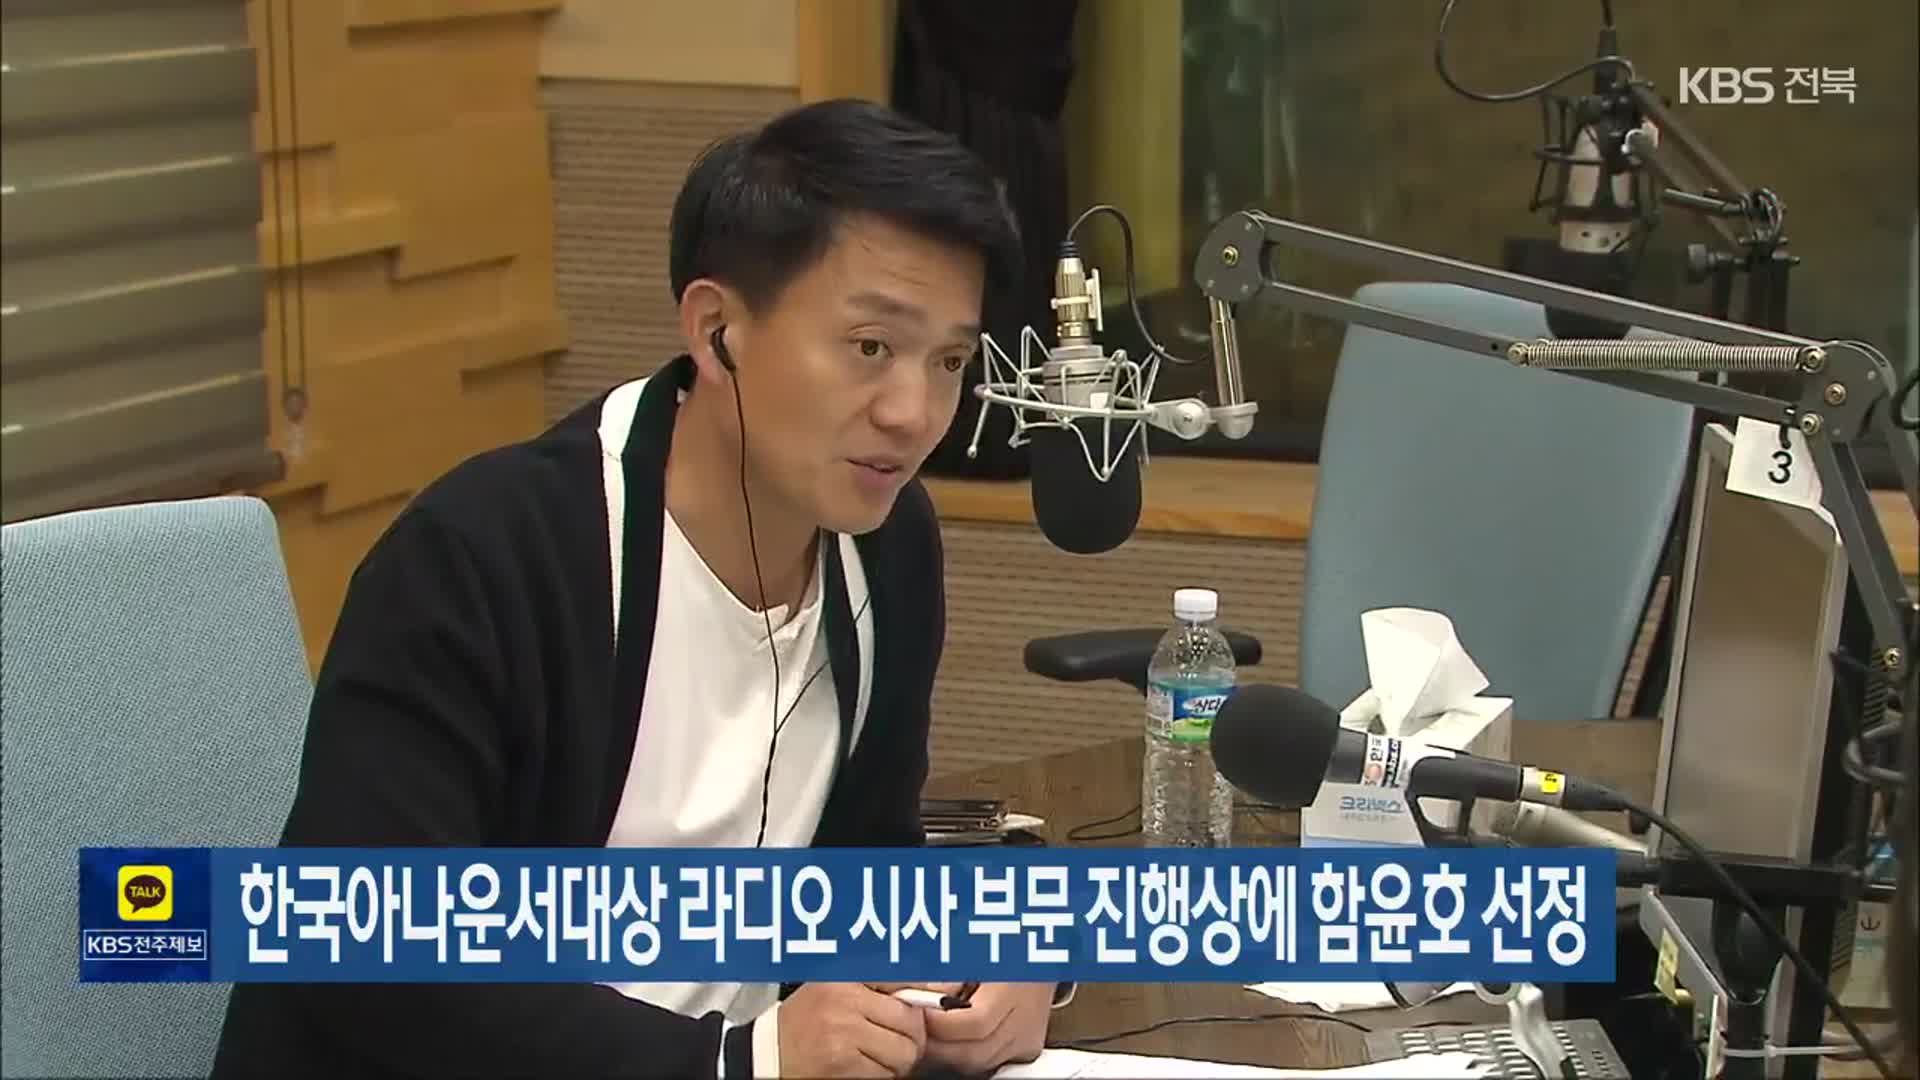 한국아나운서대상 라디오 시사 부문 진행상에 함윤호 선정